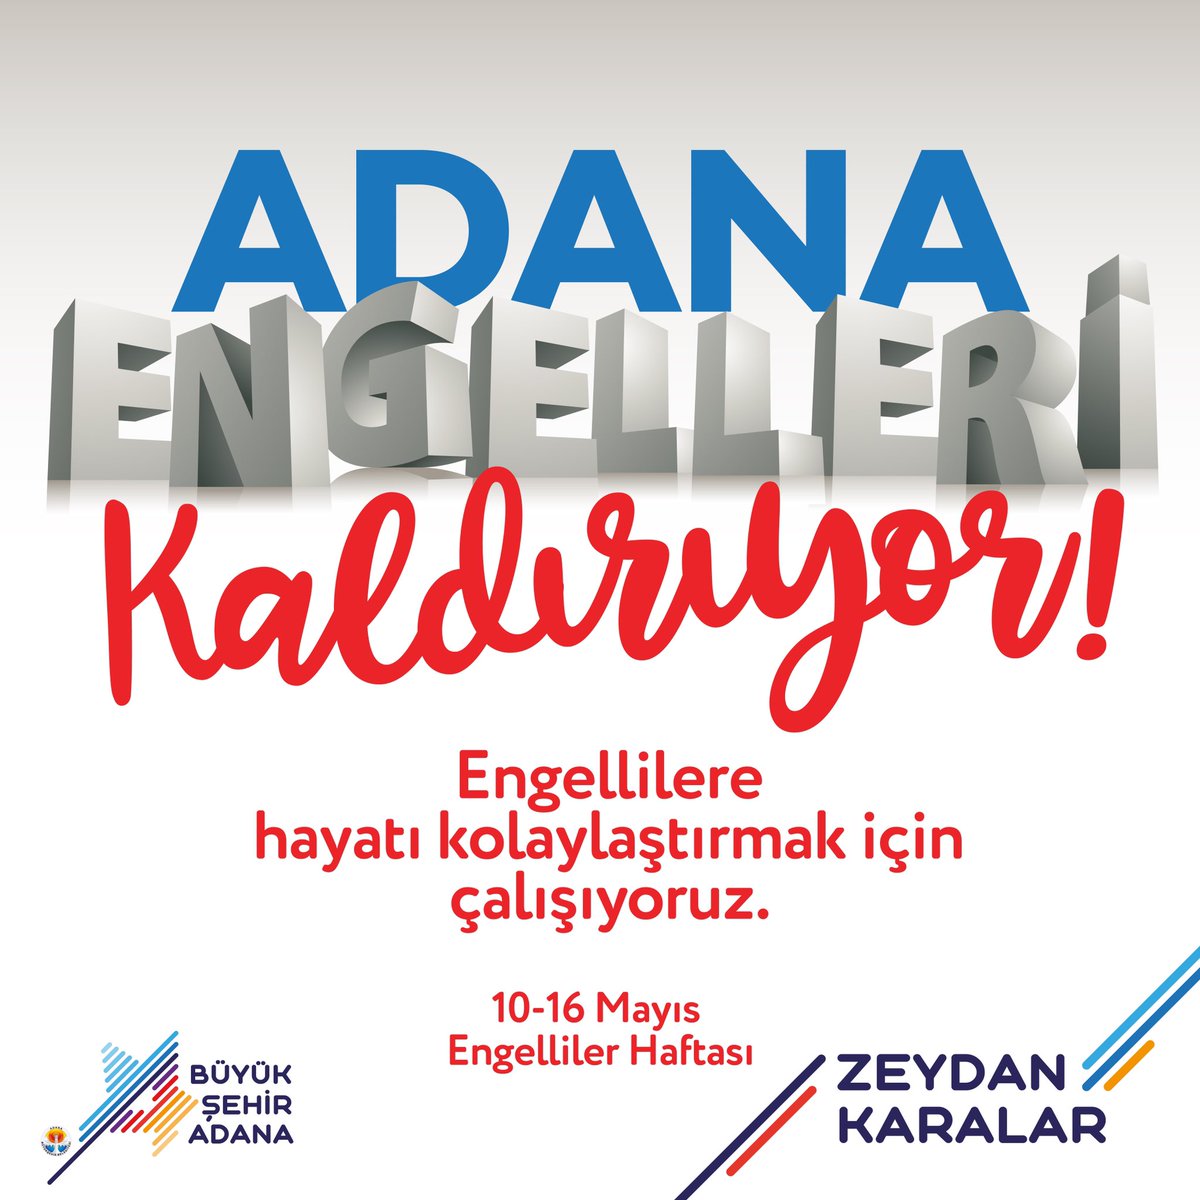 Her sağlıklı insan, bir engelli adayıdır. 10-16 Mayıs #EngellilerHaftası'nda tüm engelli vatandaşlarımızın yanında olduğumuzu bir kez daha vurguluyor; eşit, erişilebilir ve kapsayıcı bir Adana için çalışmaya devam ediyoruz.